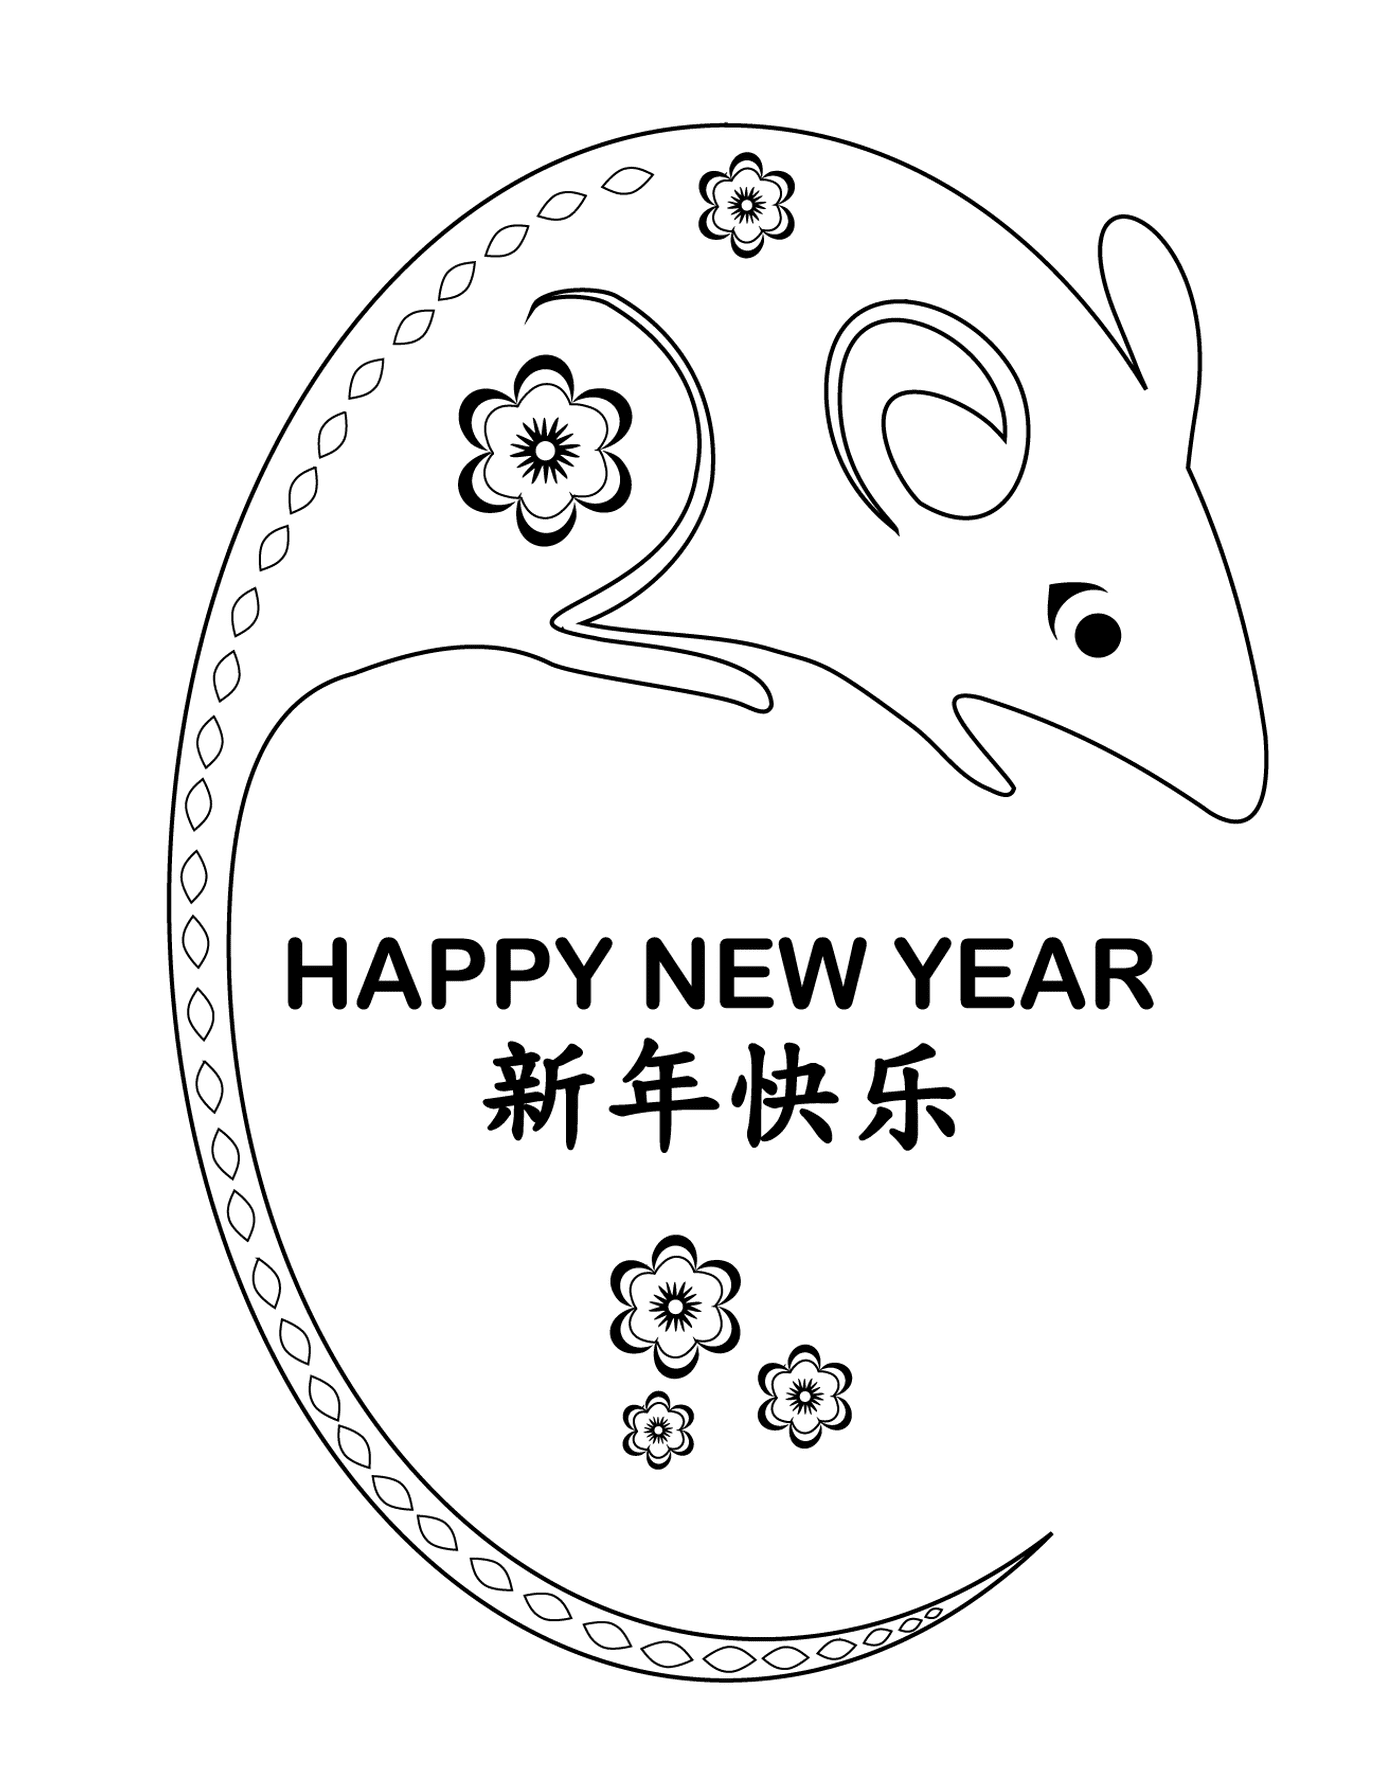  Capodanno cinese, anno del ratto di metallo 